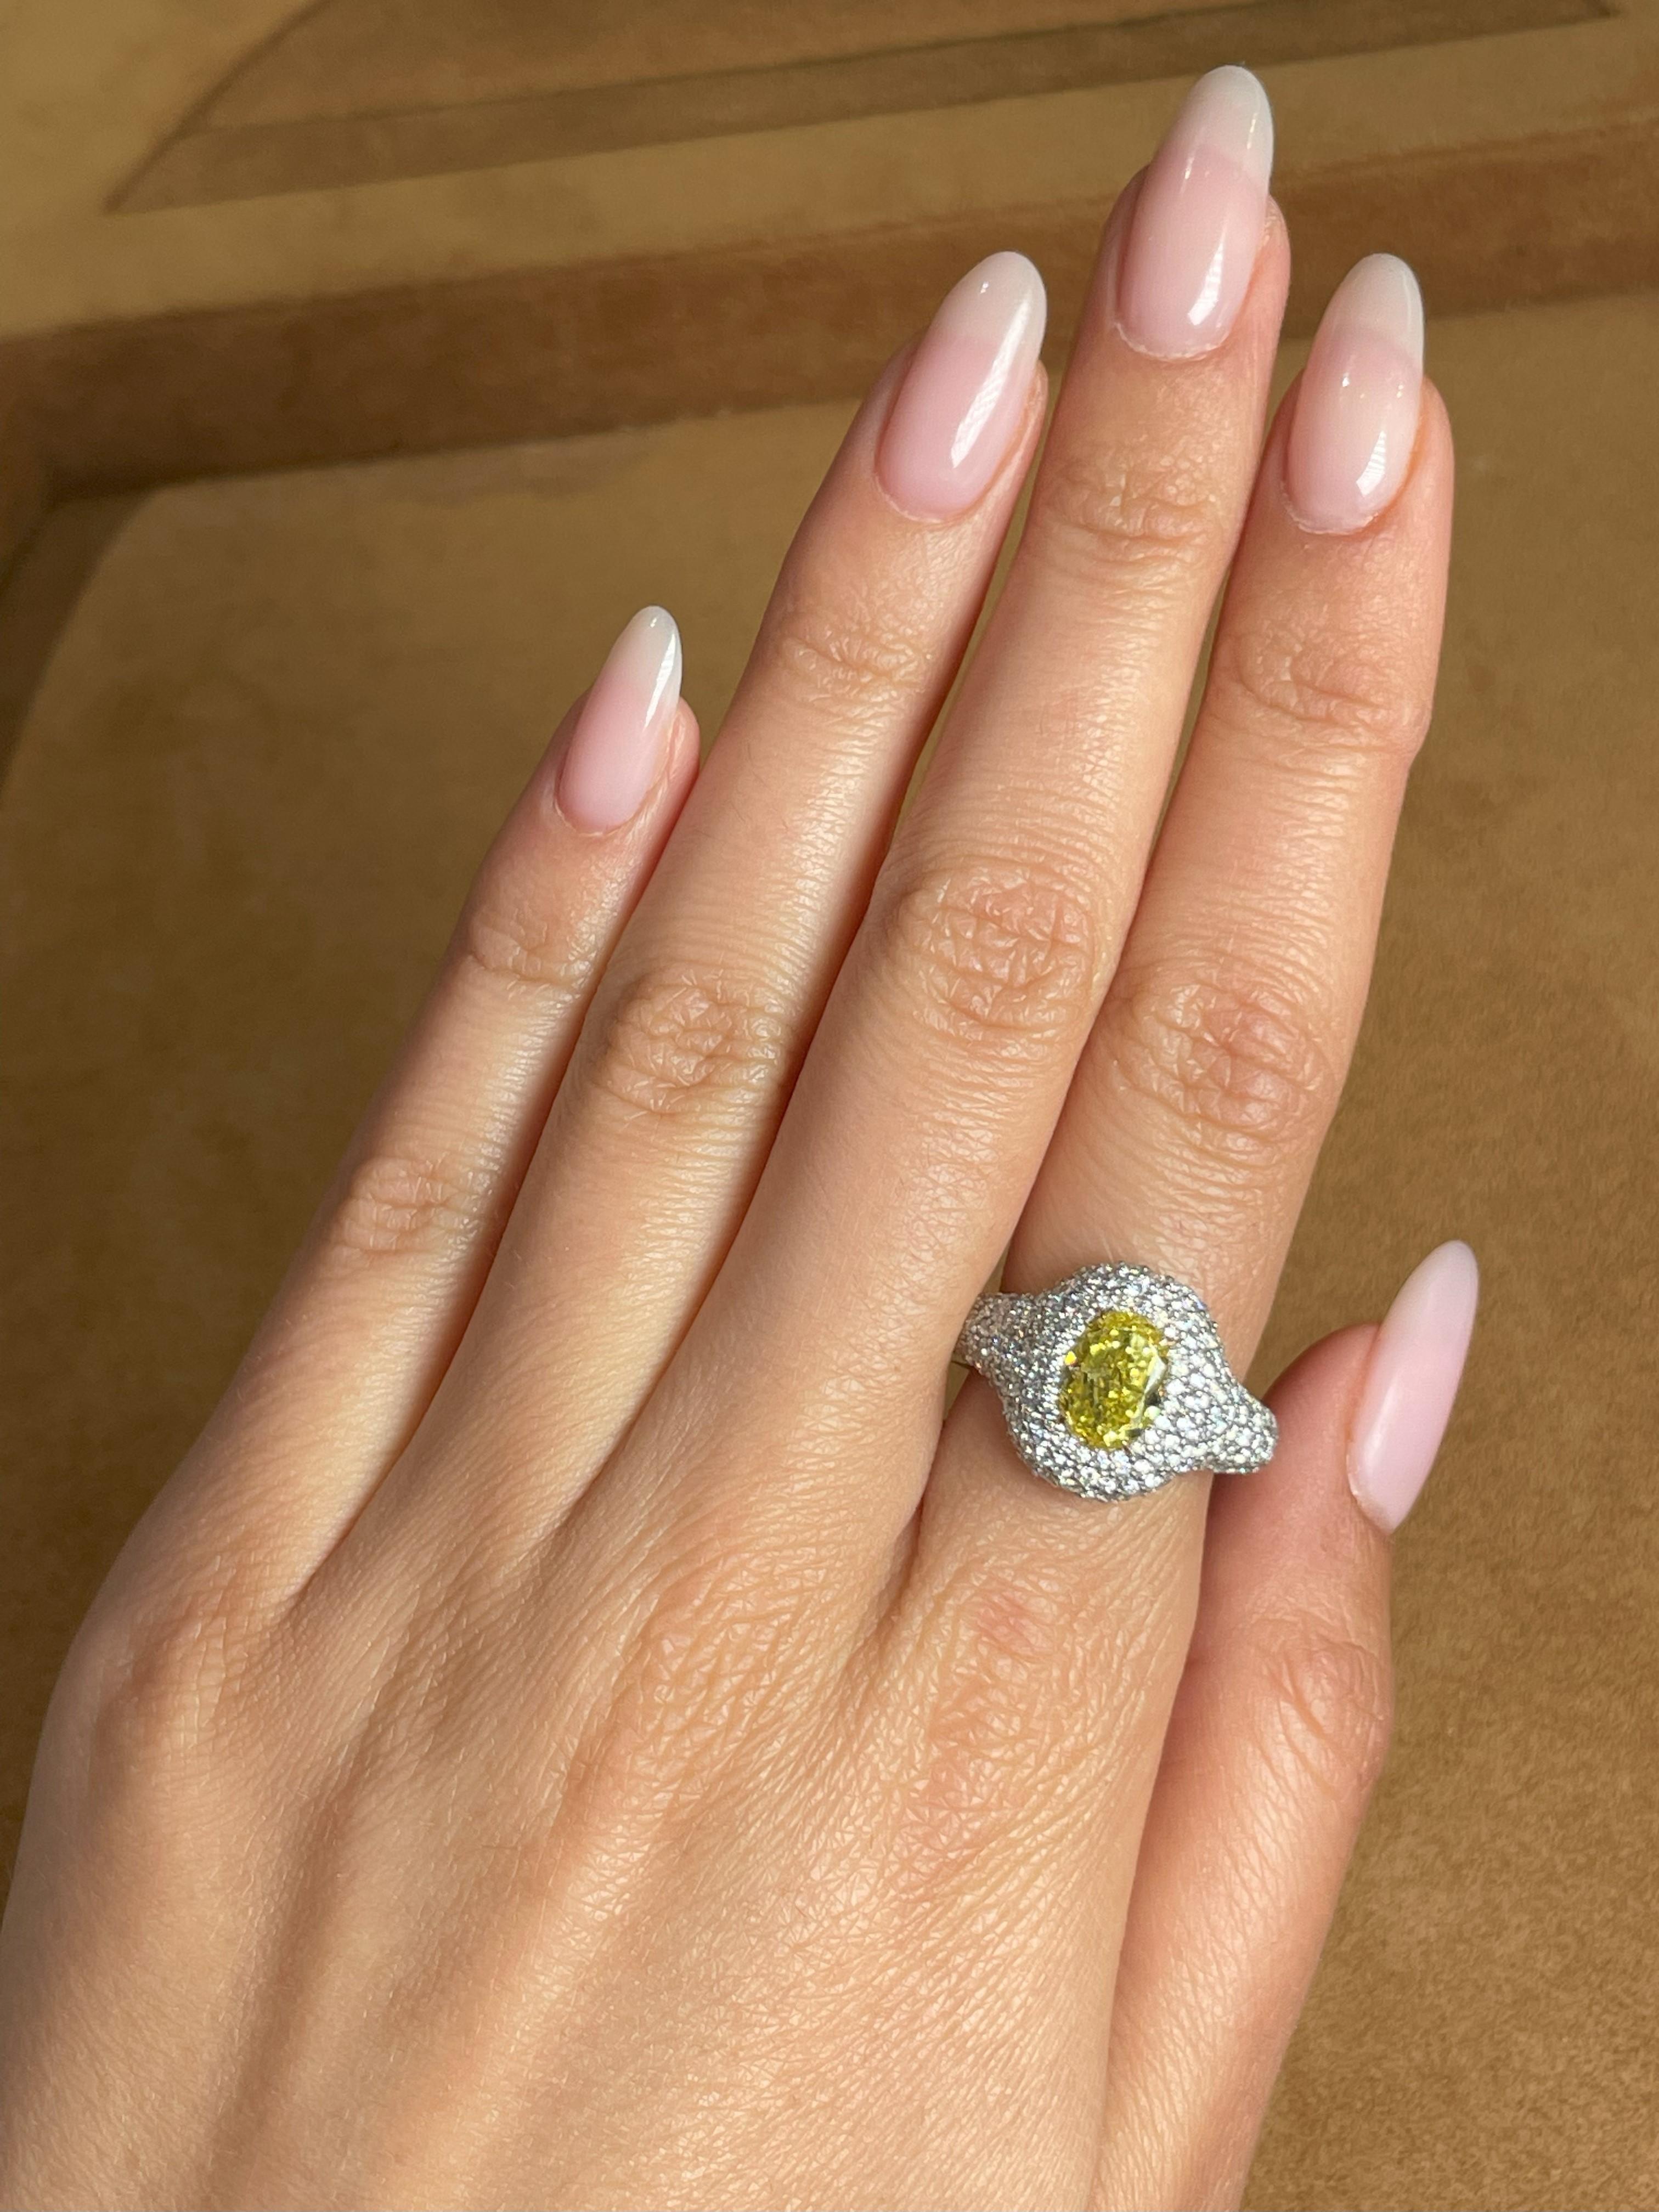 GIA-zertifiziert 1,73 Karat Fancy Vivid Yellow (höchste Intensität) Diamant im Ovalschliff, Reinheit VS2. Das klassische Design bringt die Schönheit des Mittelsteins mit den ihn umgebenden 204 runden Diamanten der Farbe G und Reinheit VS in einer